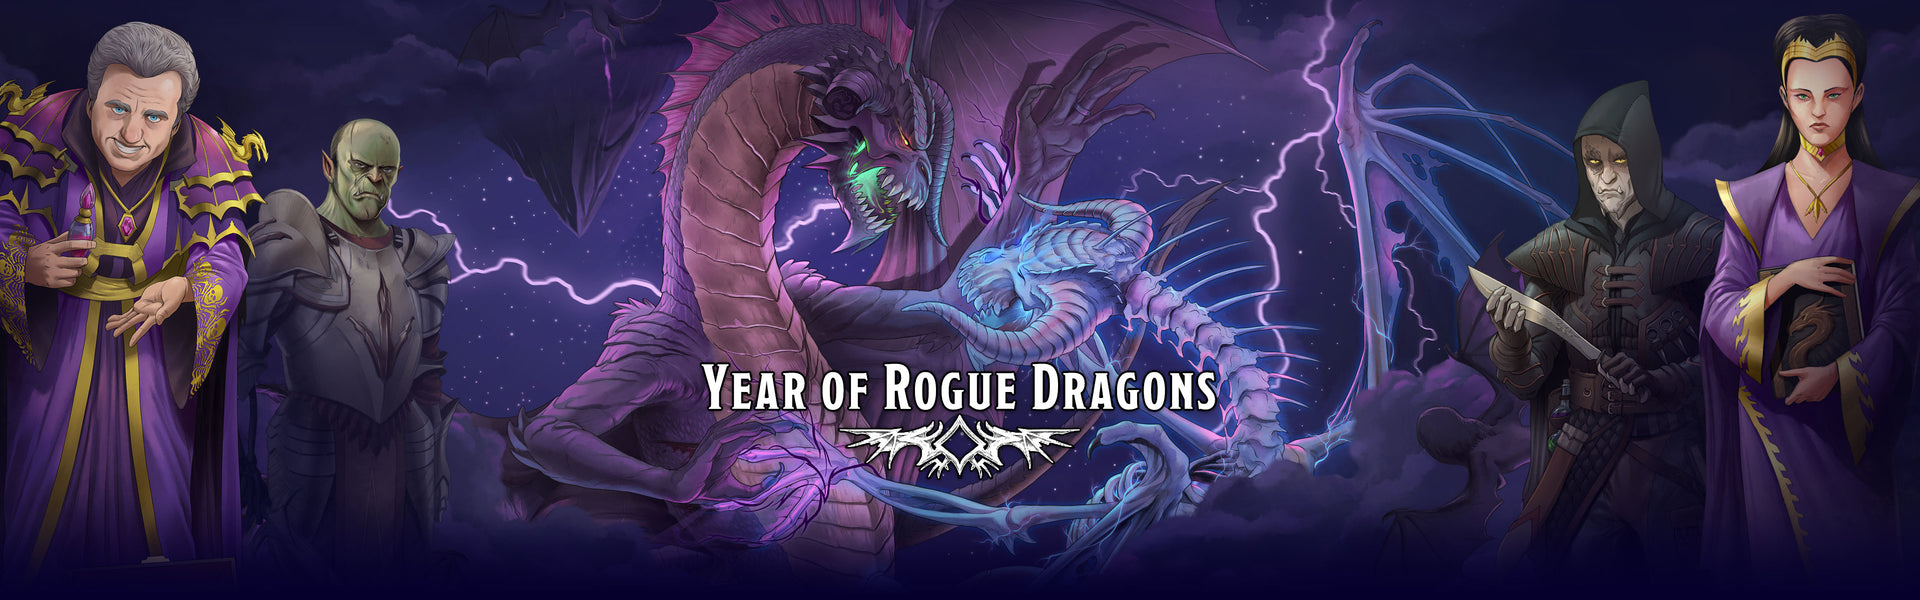 Year of Rogue Dragons